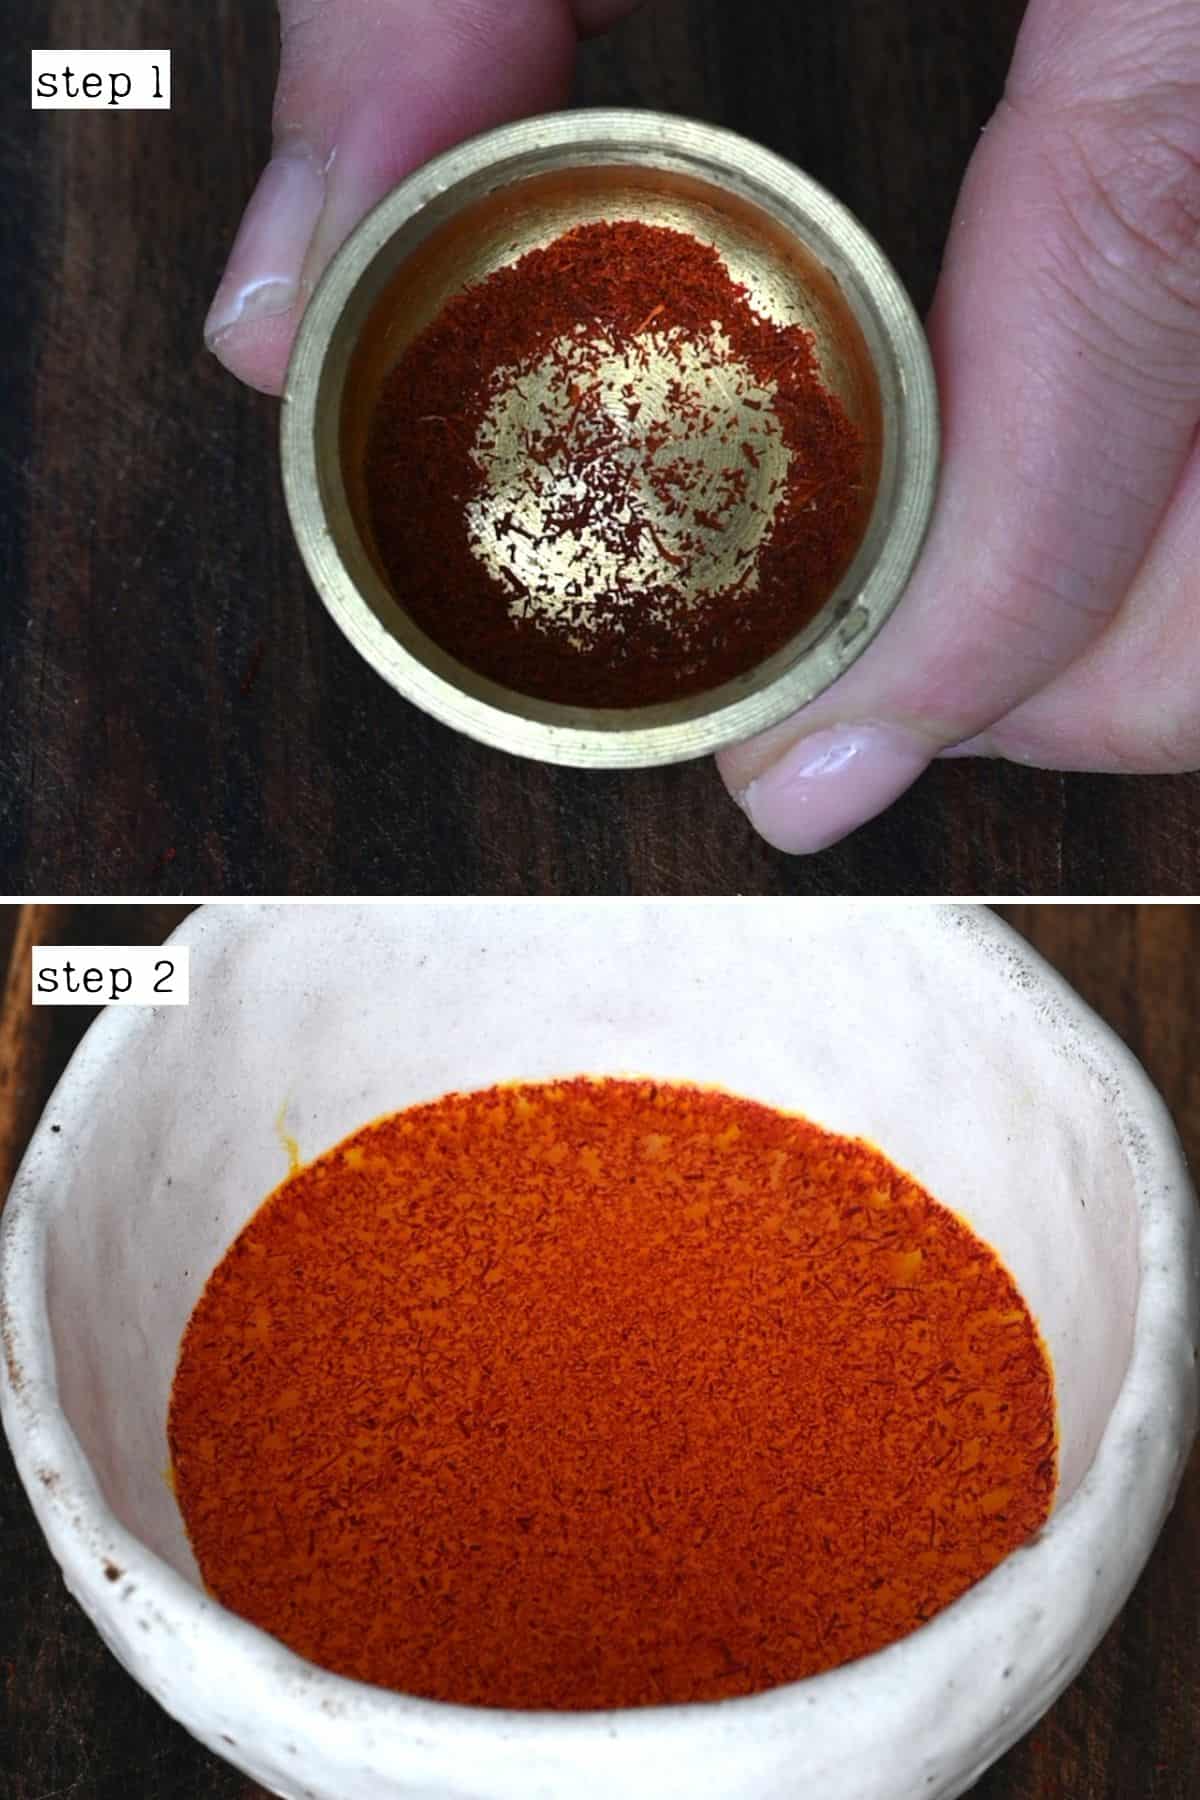 Steps for dissolving saffron